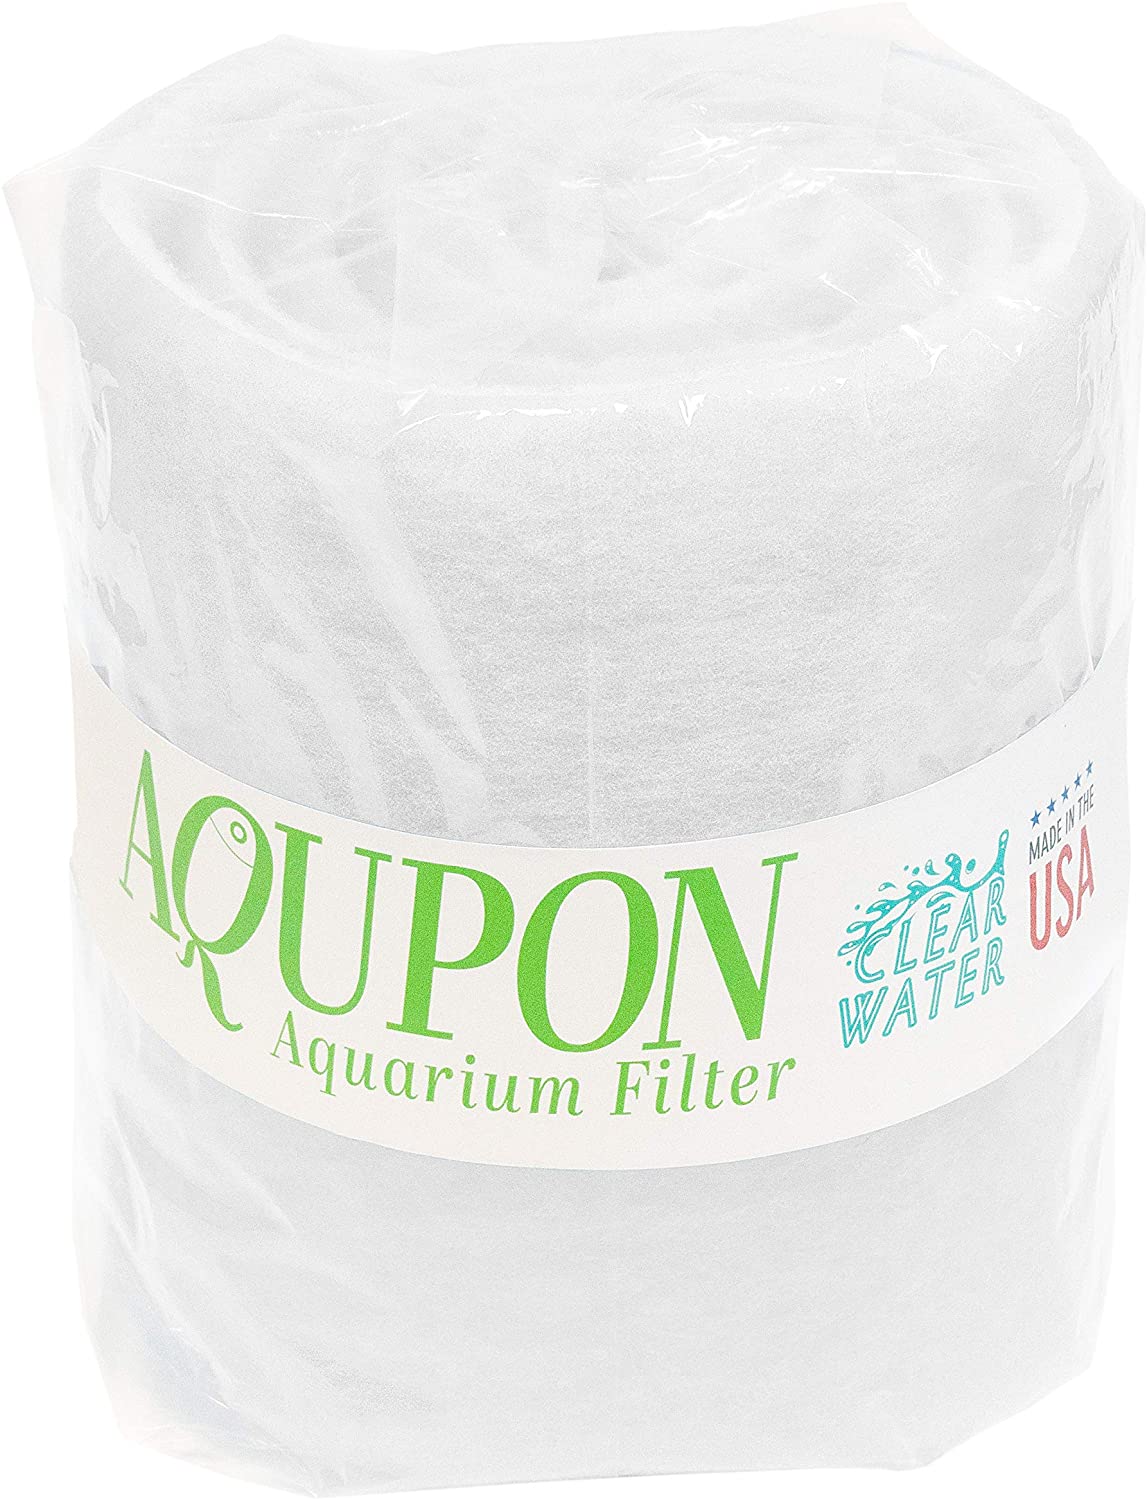 AQUPON Aquarium Filter Pad - Premium Aquarium Filter Media Roll for Clear Water